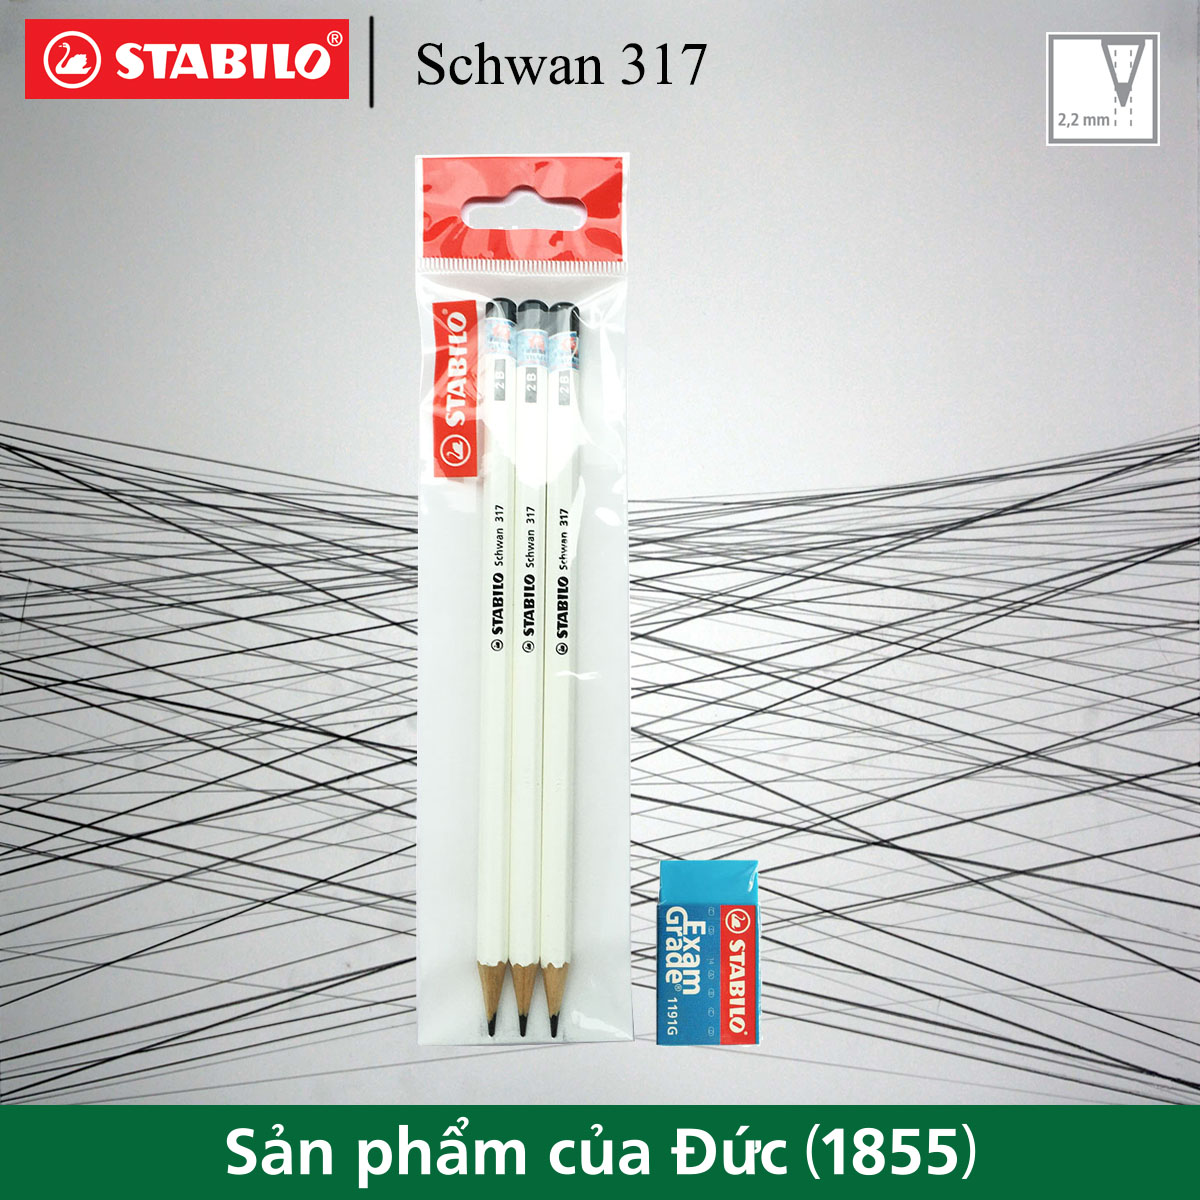 Bộ 3 bút chì gỗ STABILO Schwan 317 2B